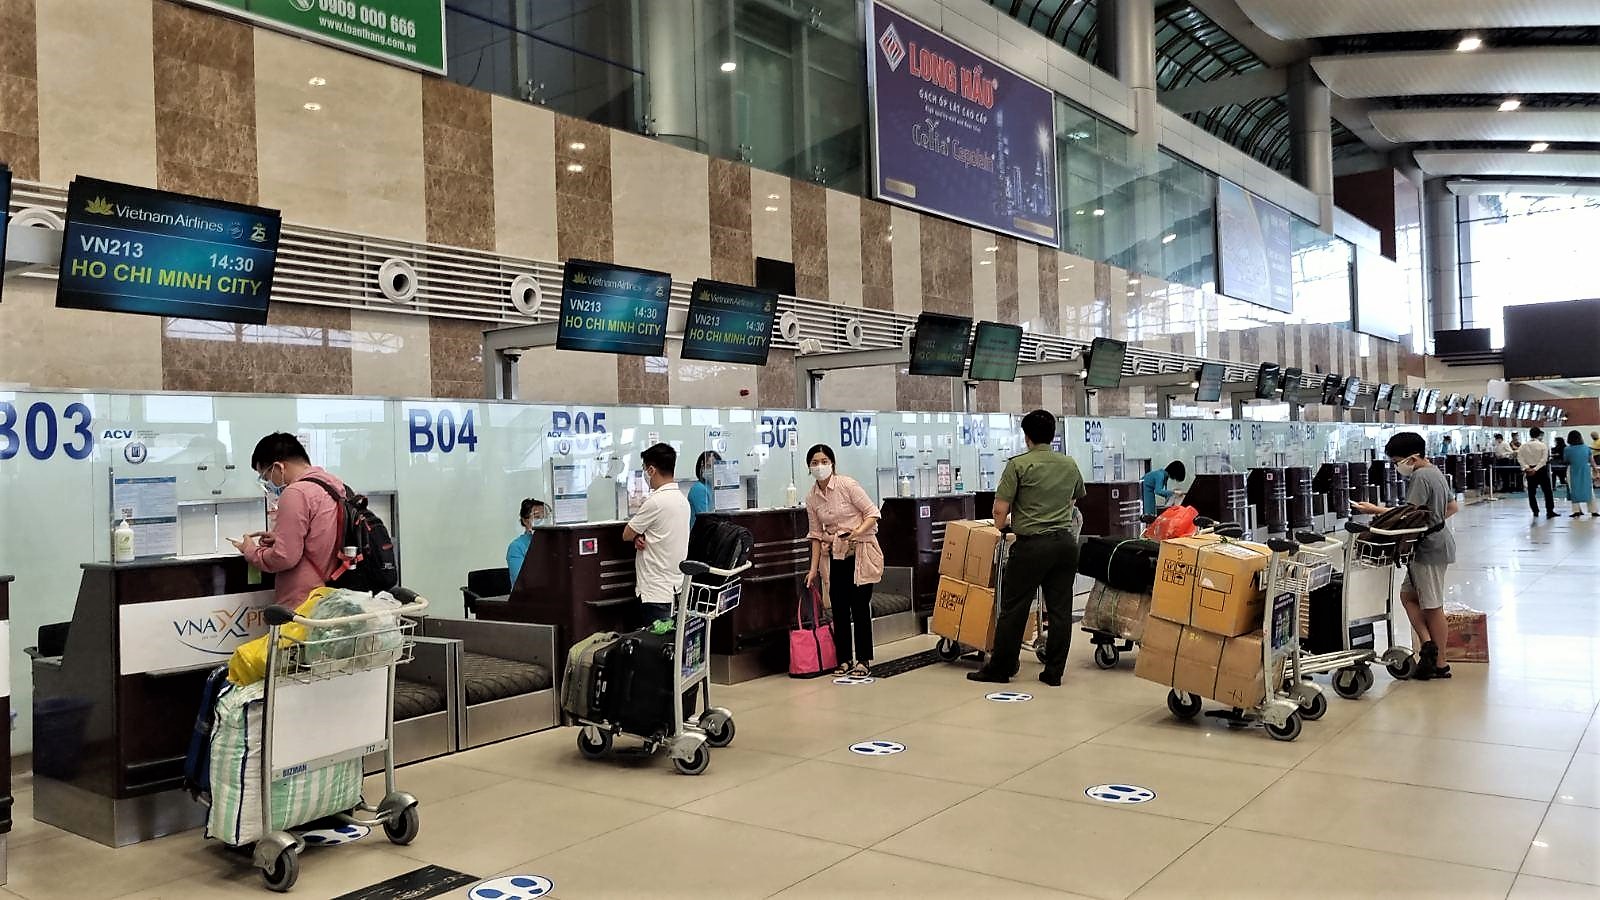 Chuyến bay đầu tiên của hãng từ Hà Nội là VN213 đi Tp Hồ Chí Minh lúc 14h30 ngày 10.10